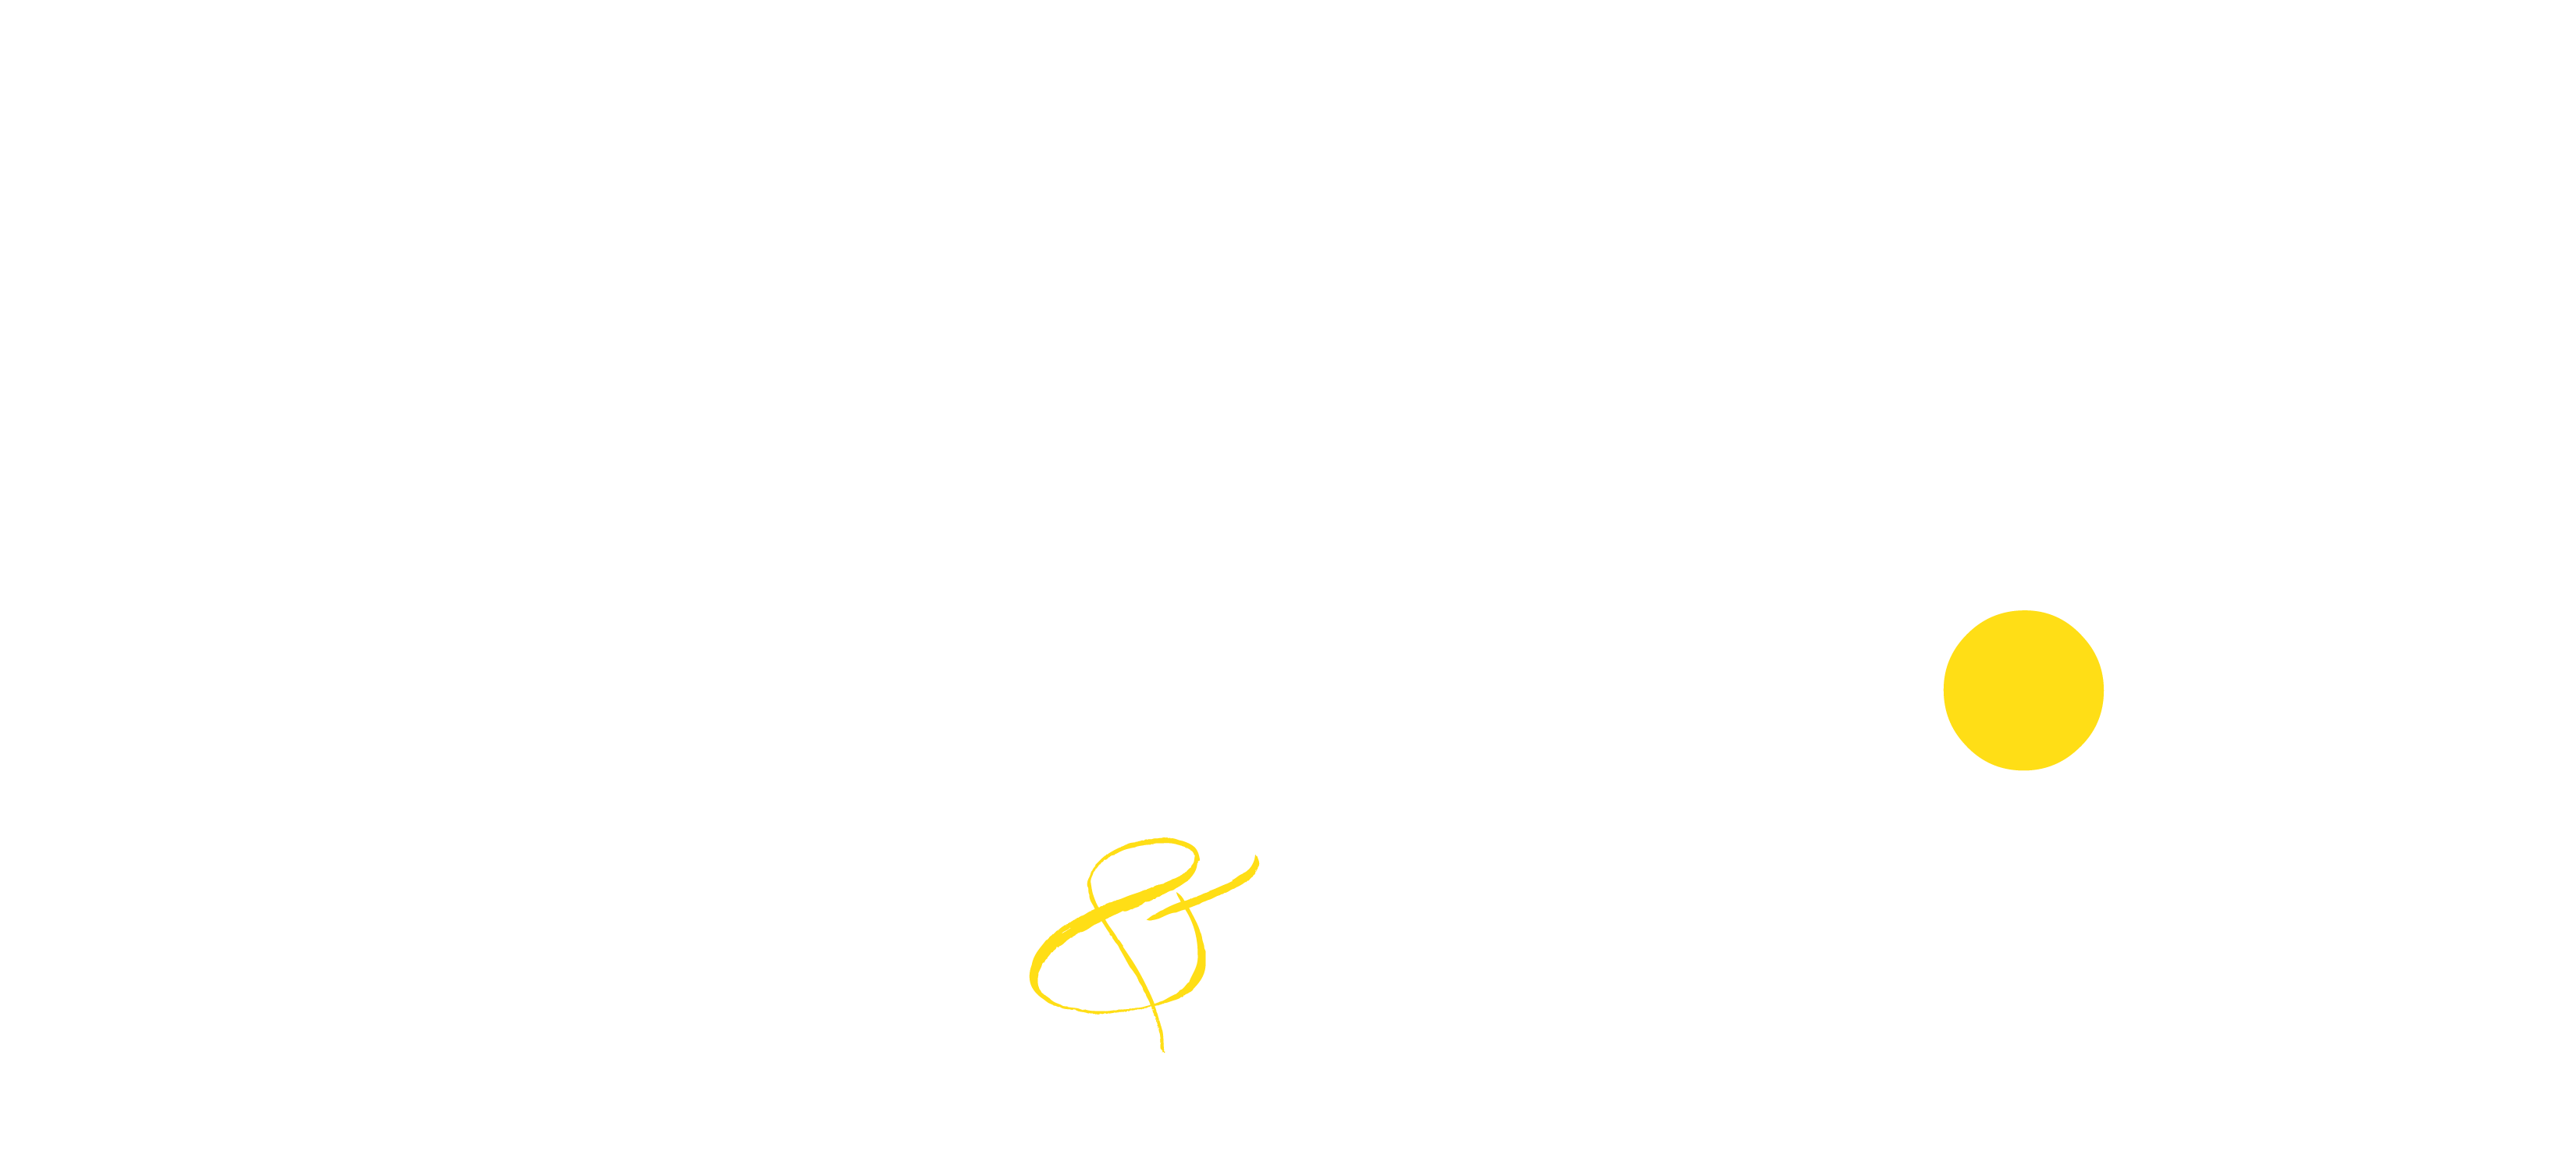 Drybar Logo - Shine. Salon & Drybar. West Dundee and Hampshire Salons